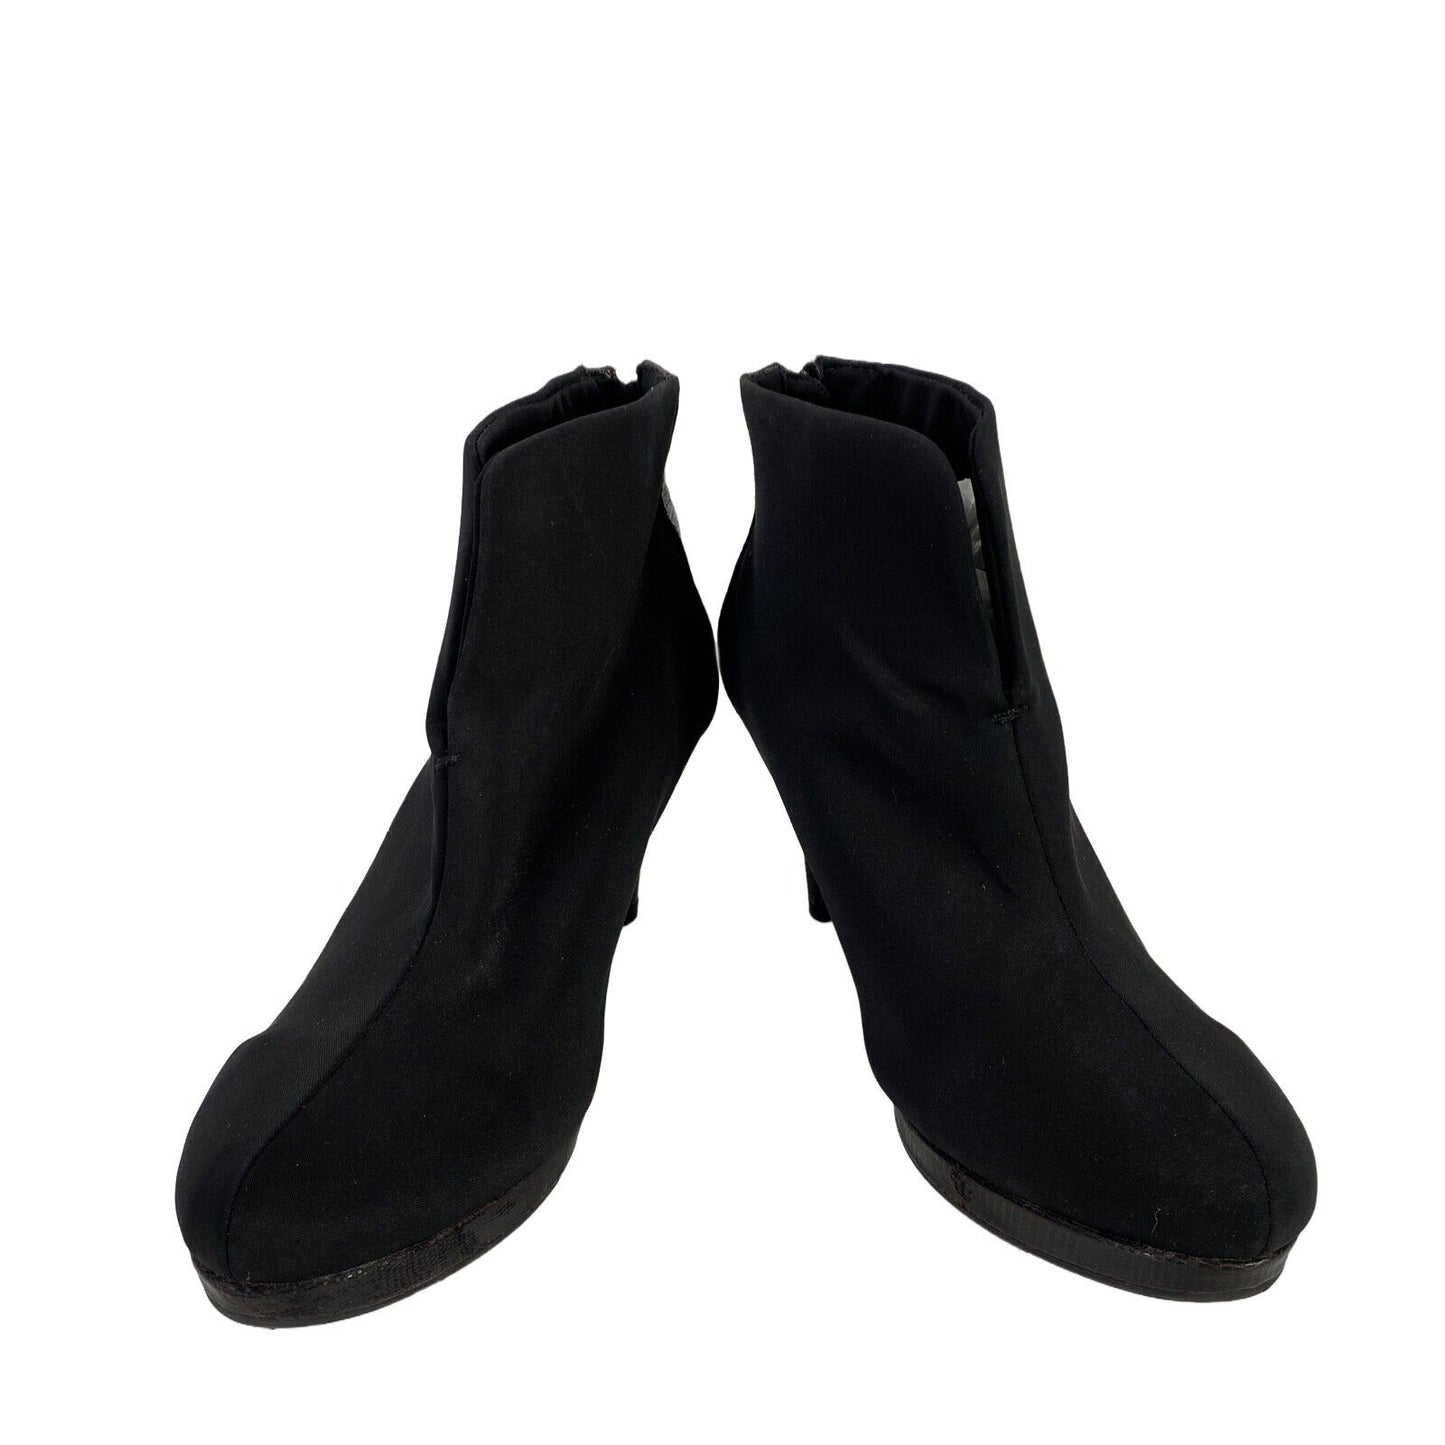 Bandolino - Tacones tipo botín con cremallera trasera de tela negra para mujer - 9,5 M